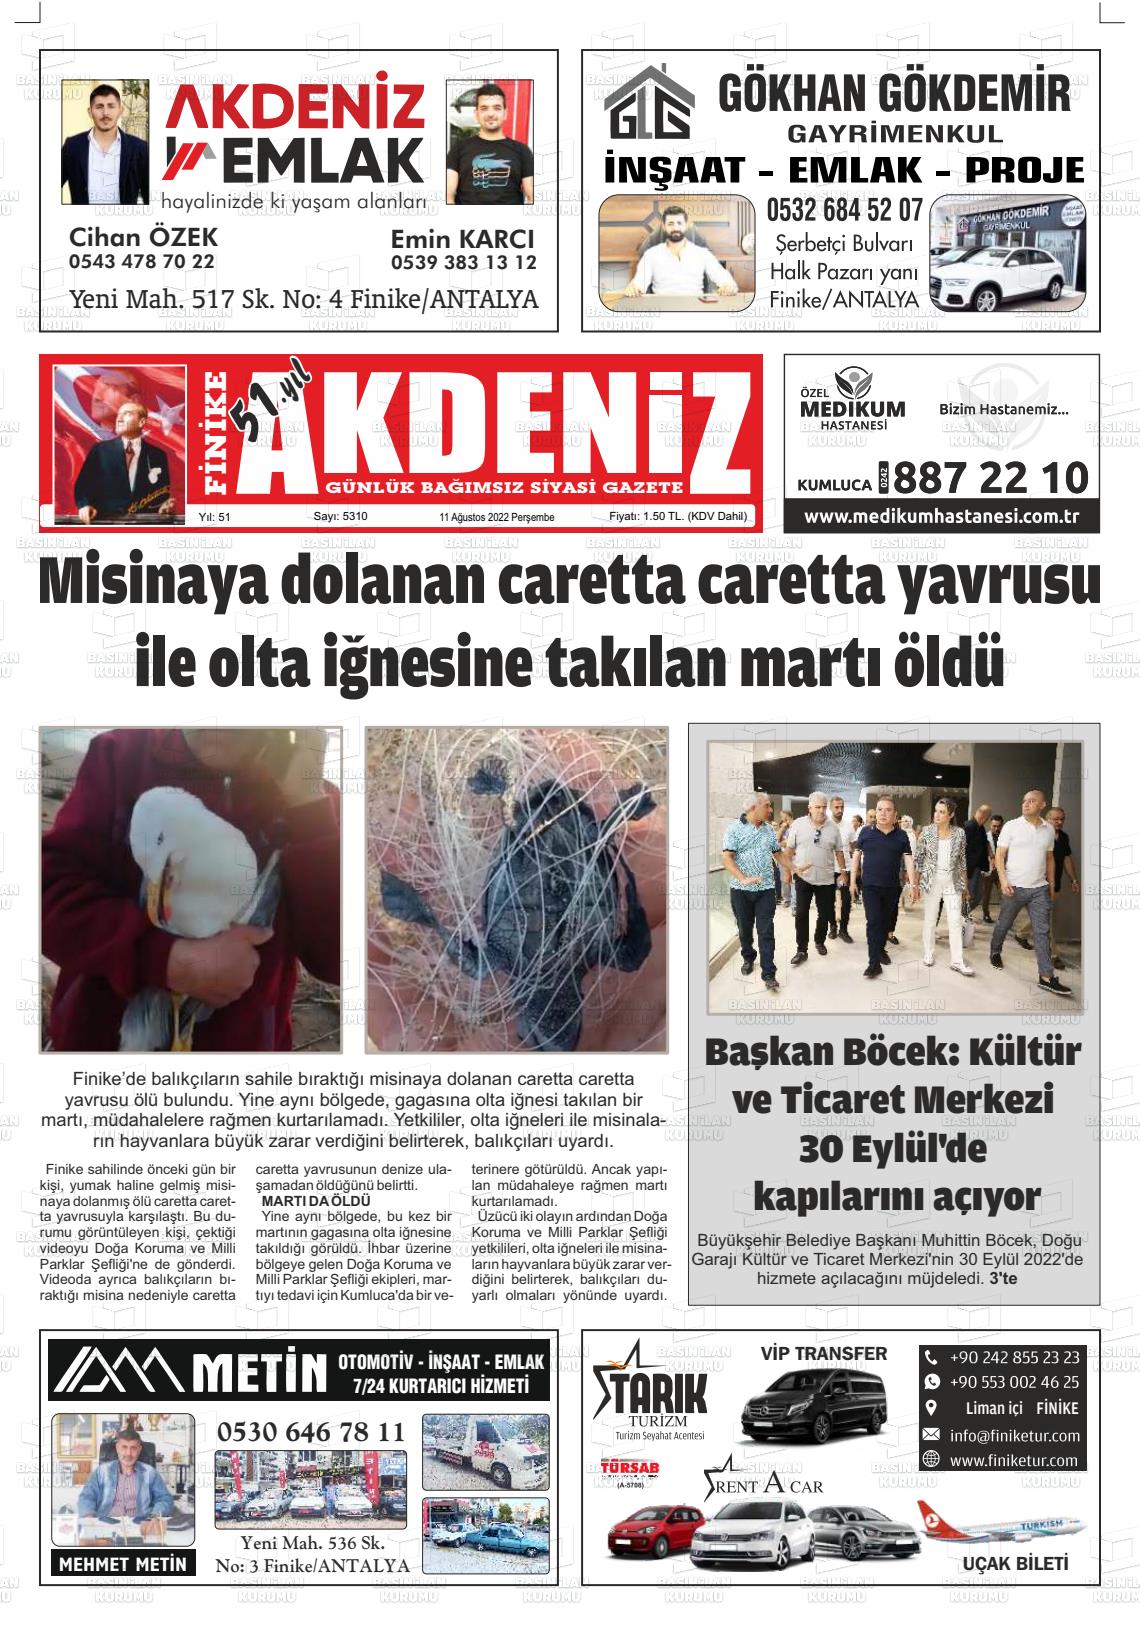 11 Ağustos 2022 Finike Akdeniz Gazete Manşeti